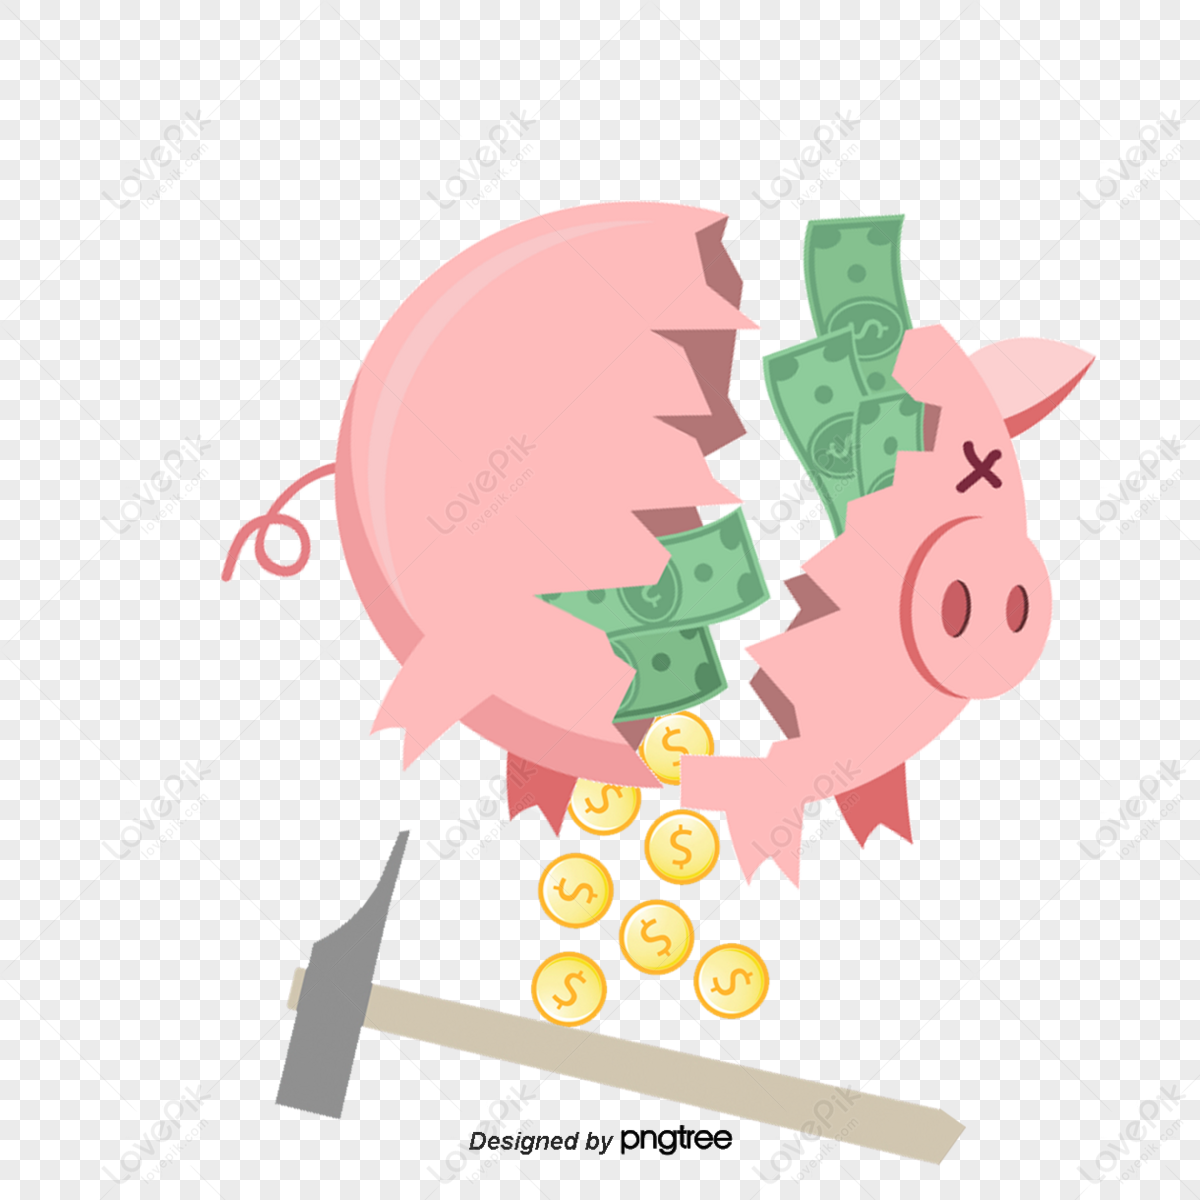 Gold Piggy Bank PNG Images & PSDs for Download